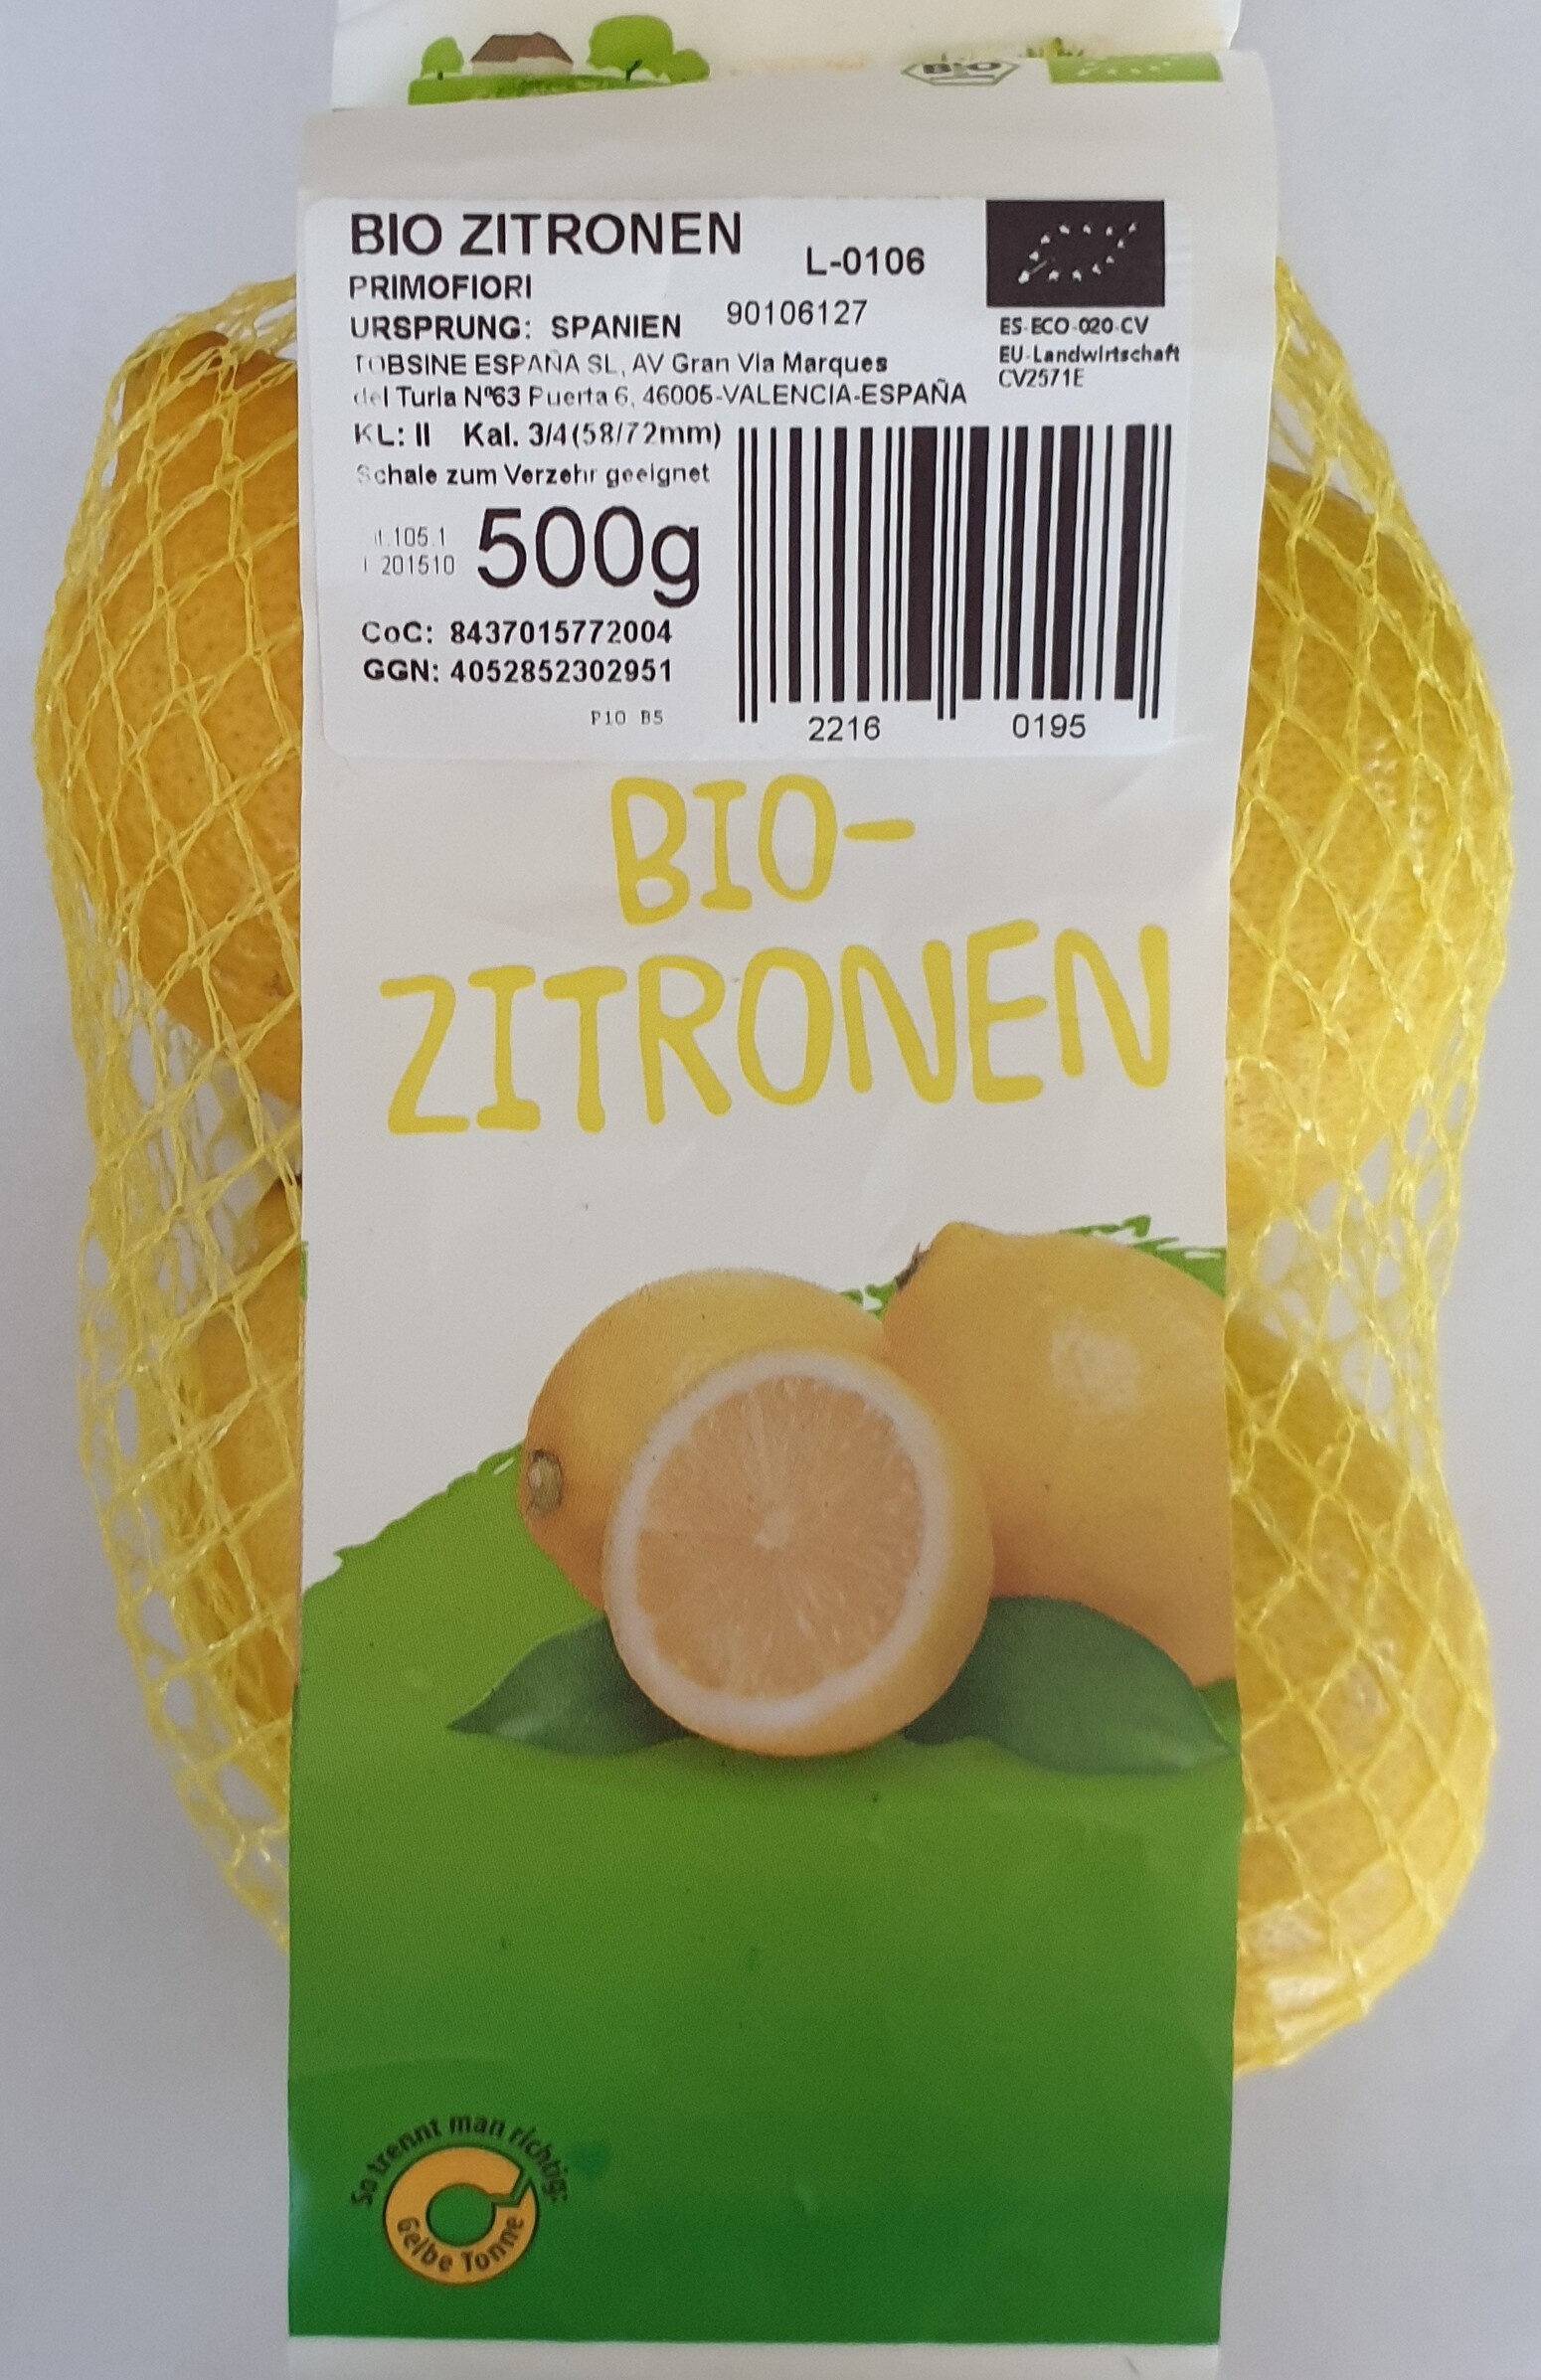 Bio Zitronen, Primfiori - Product - de